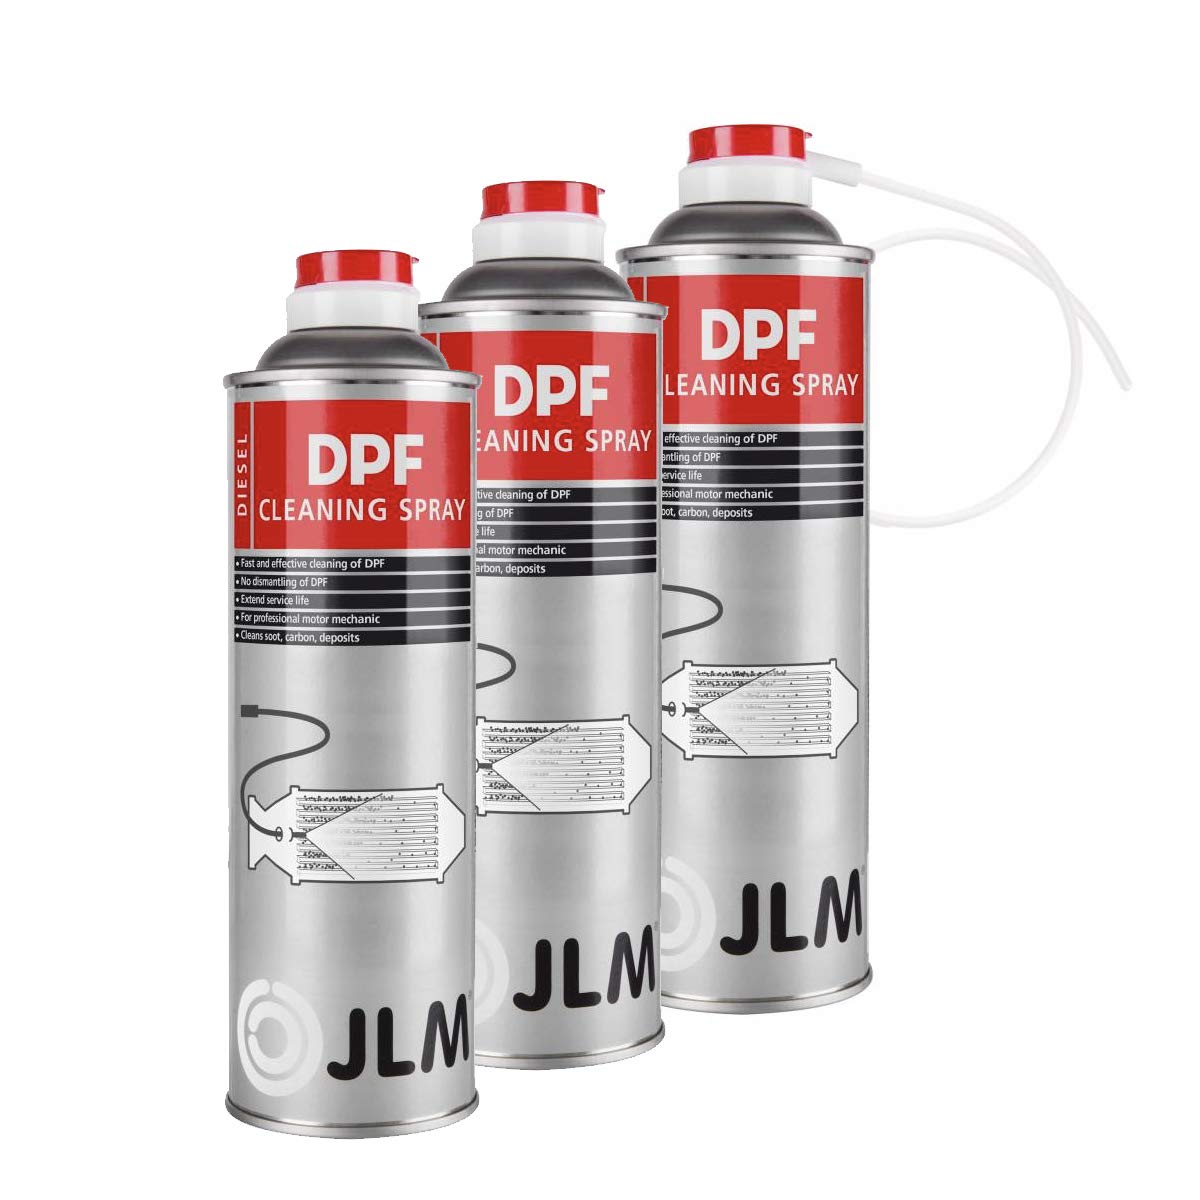 JLM Diesel Rußpartikelfilter (DPF) Reinigungsspray 3 x 400ml (1200ml) | JLM DPF Spray 3 Flaschen von JLM